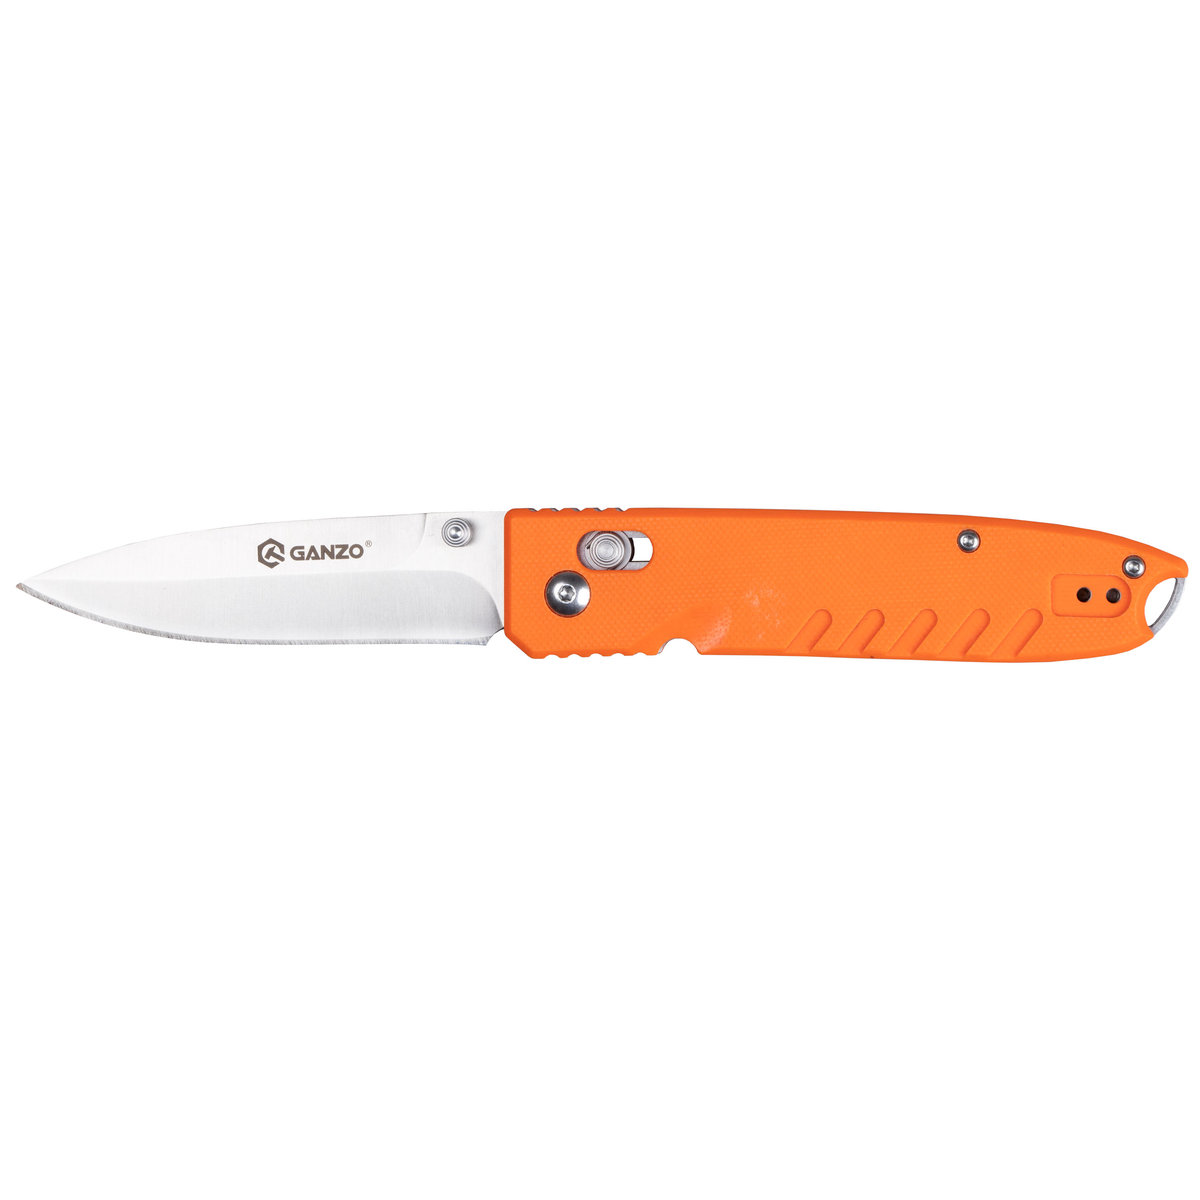 Ganzo GANZO nóż kieszonkowy nóż, pomarańczowa, jeden rozmiar G746-1-OR